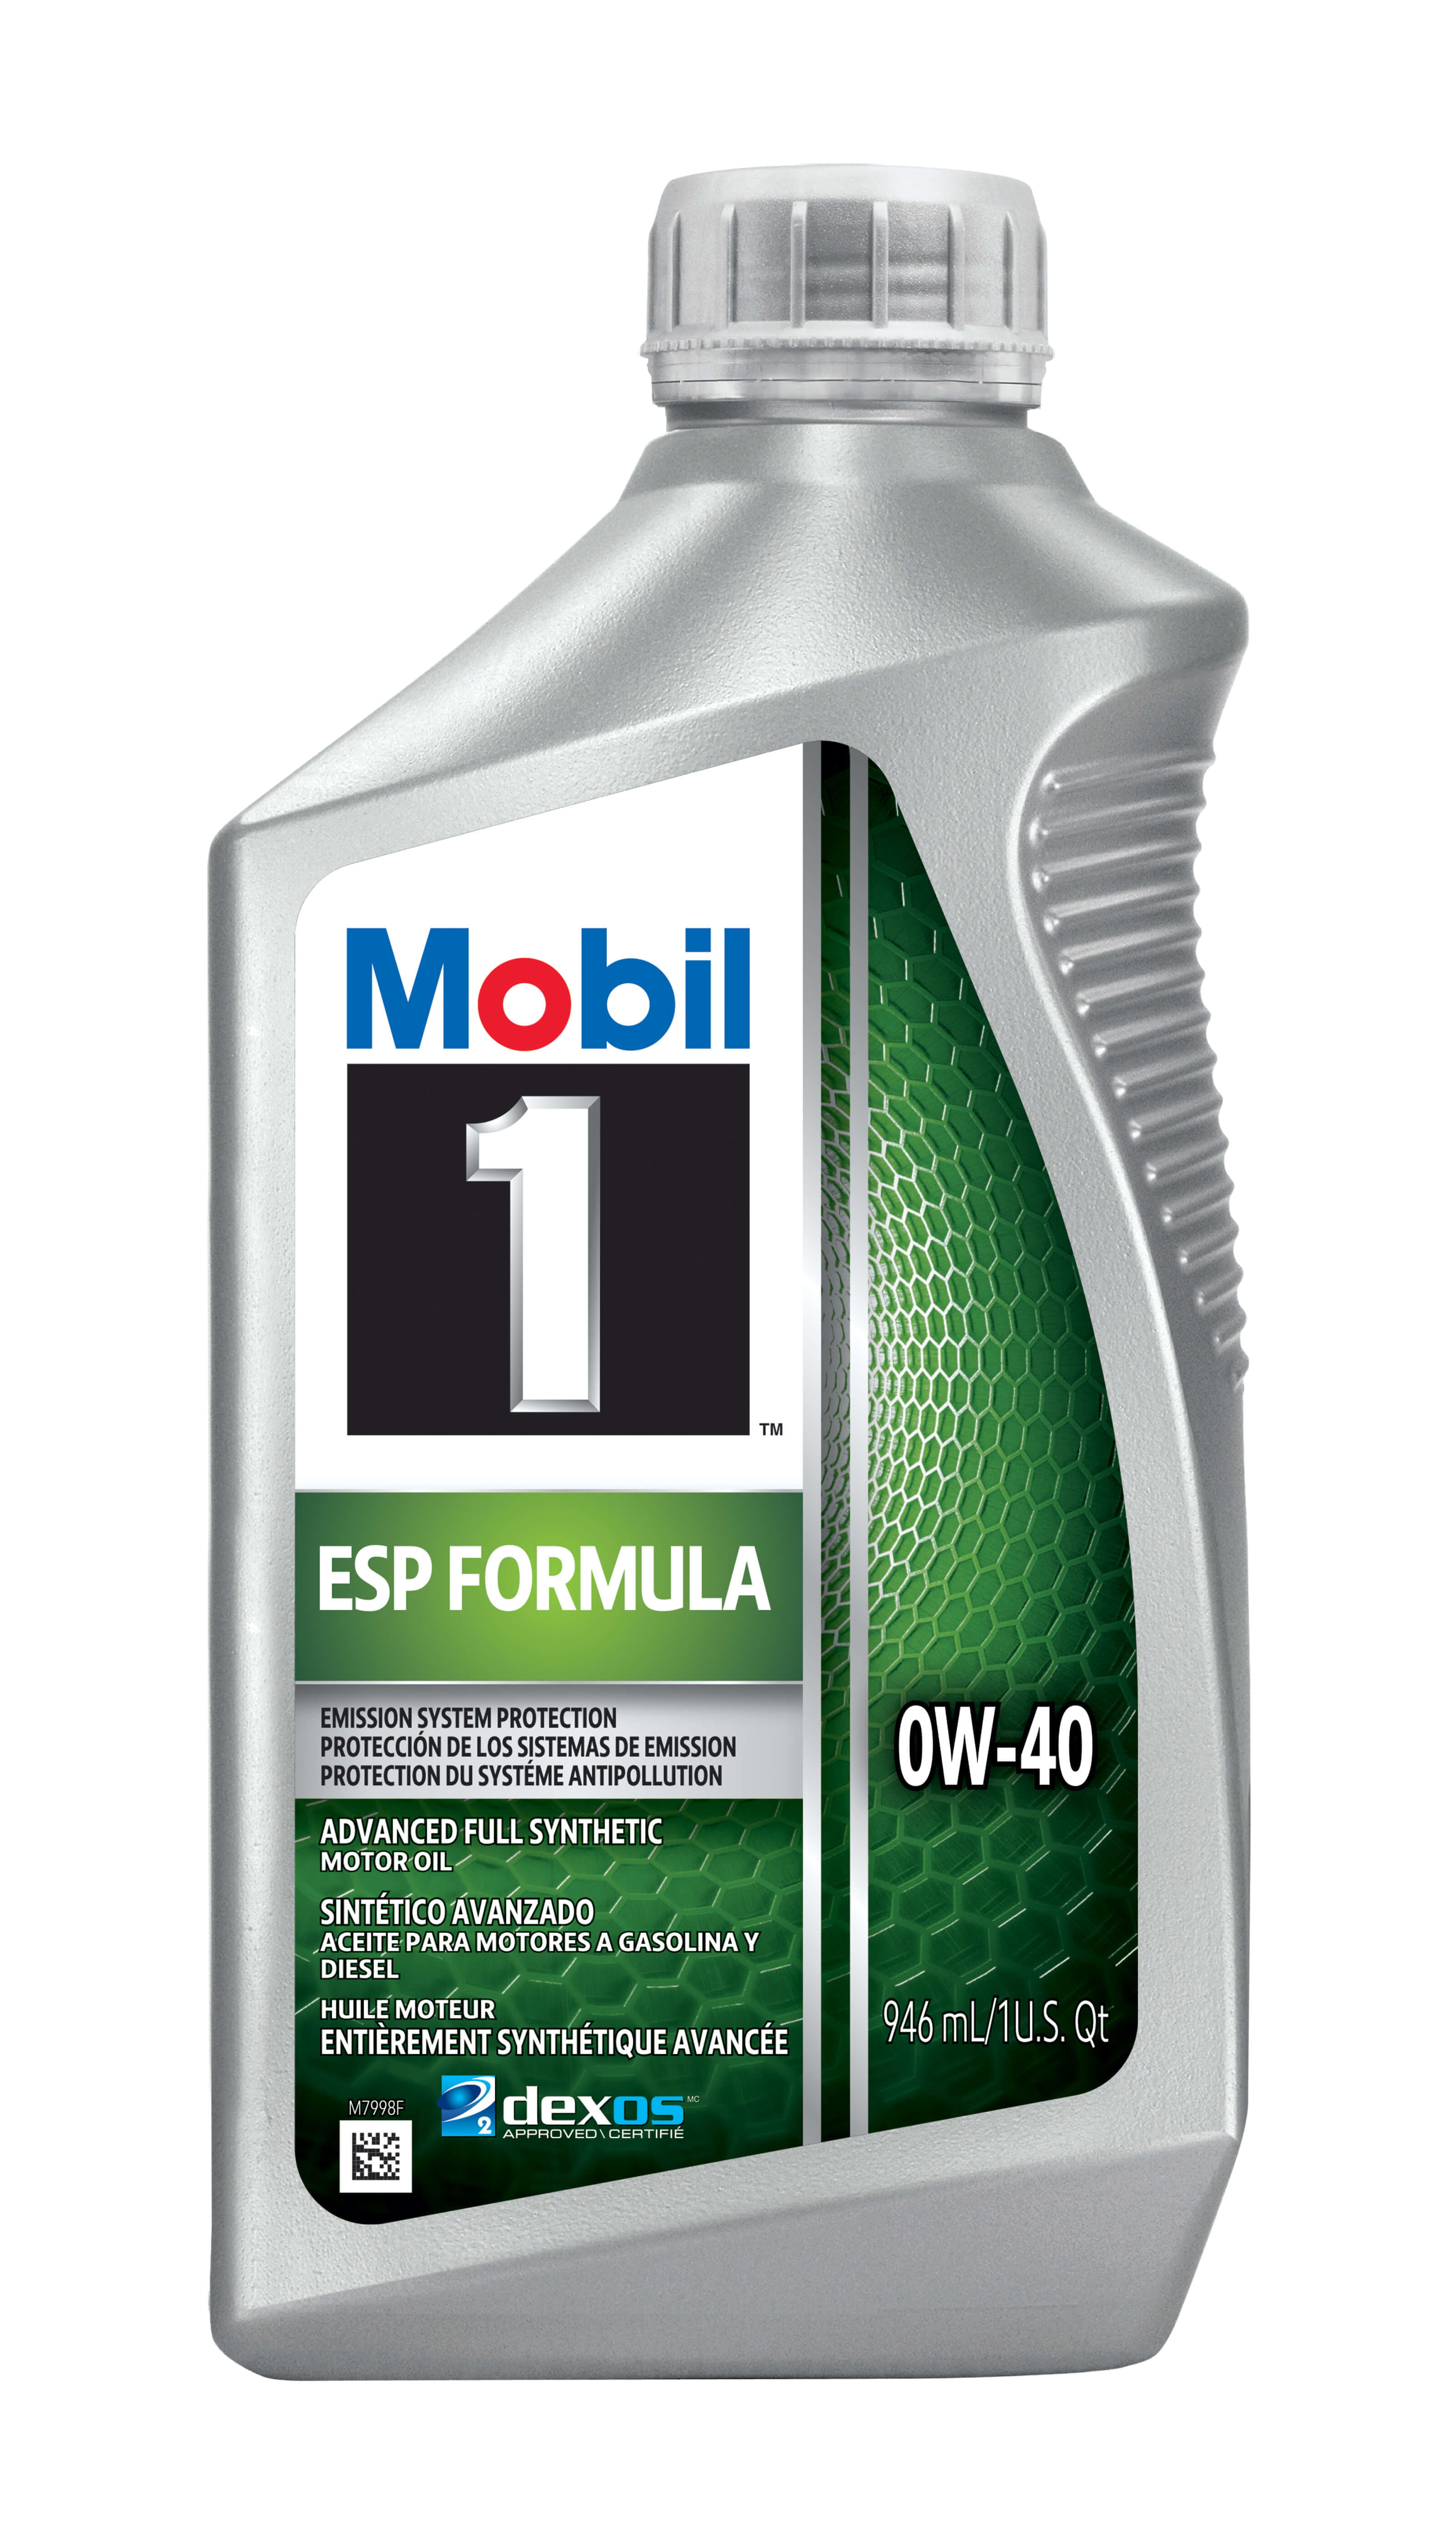 Mobil 1 ESP Full Synthetic Motor Oil 0W-40, 1 Quart - Walmart.com